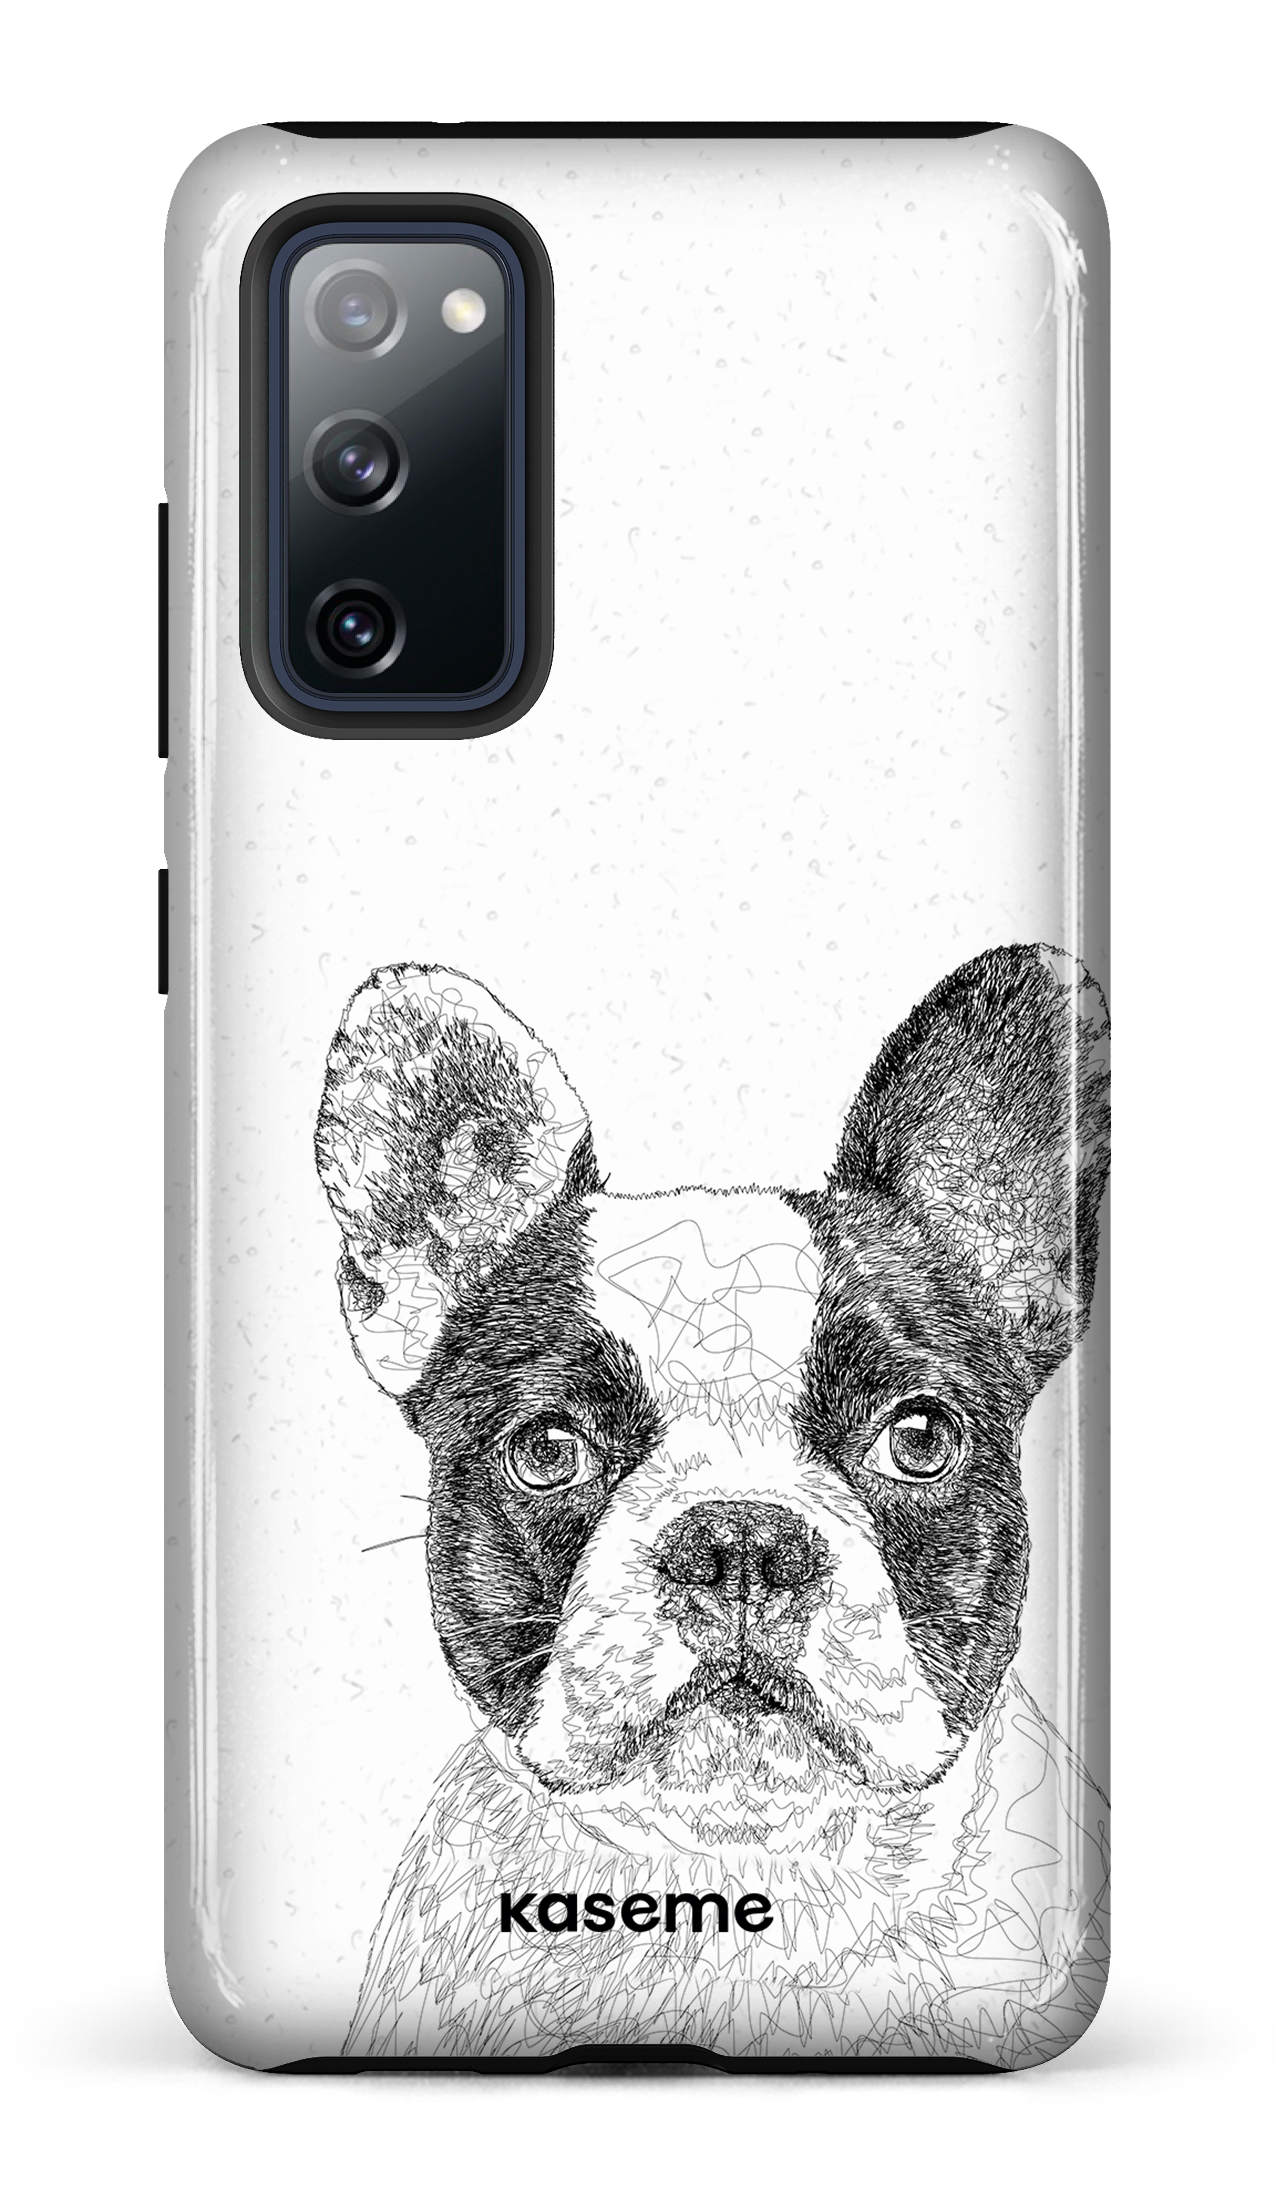 French Bulldog - Galaxy S20 FE